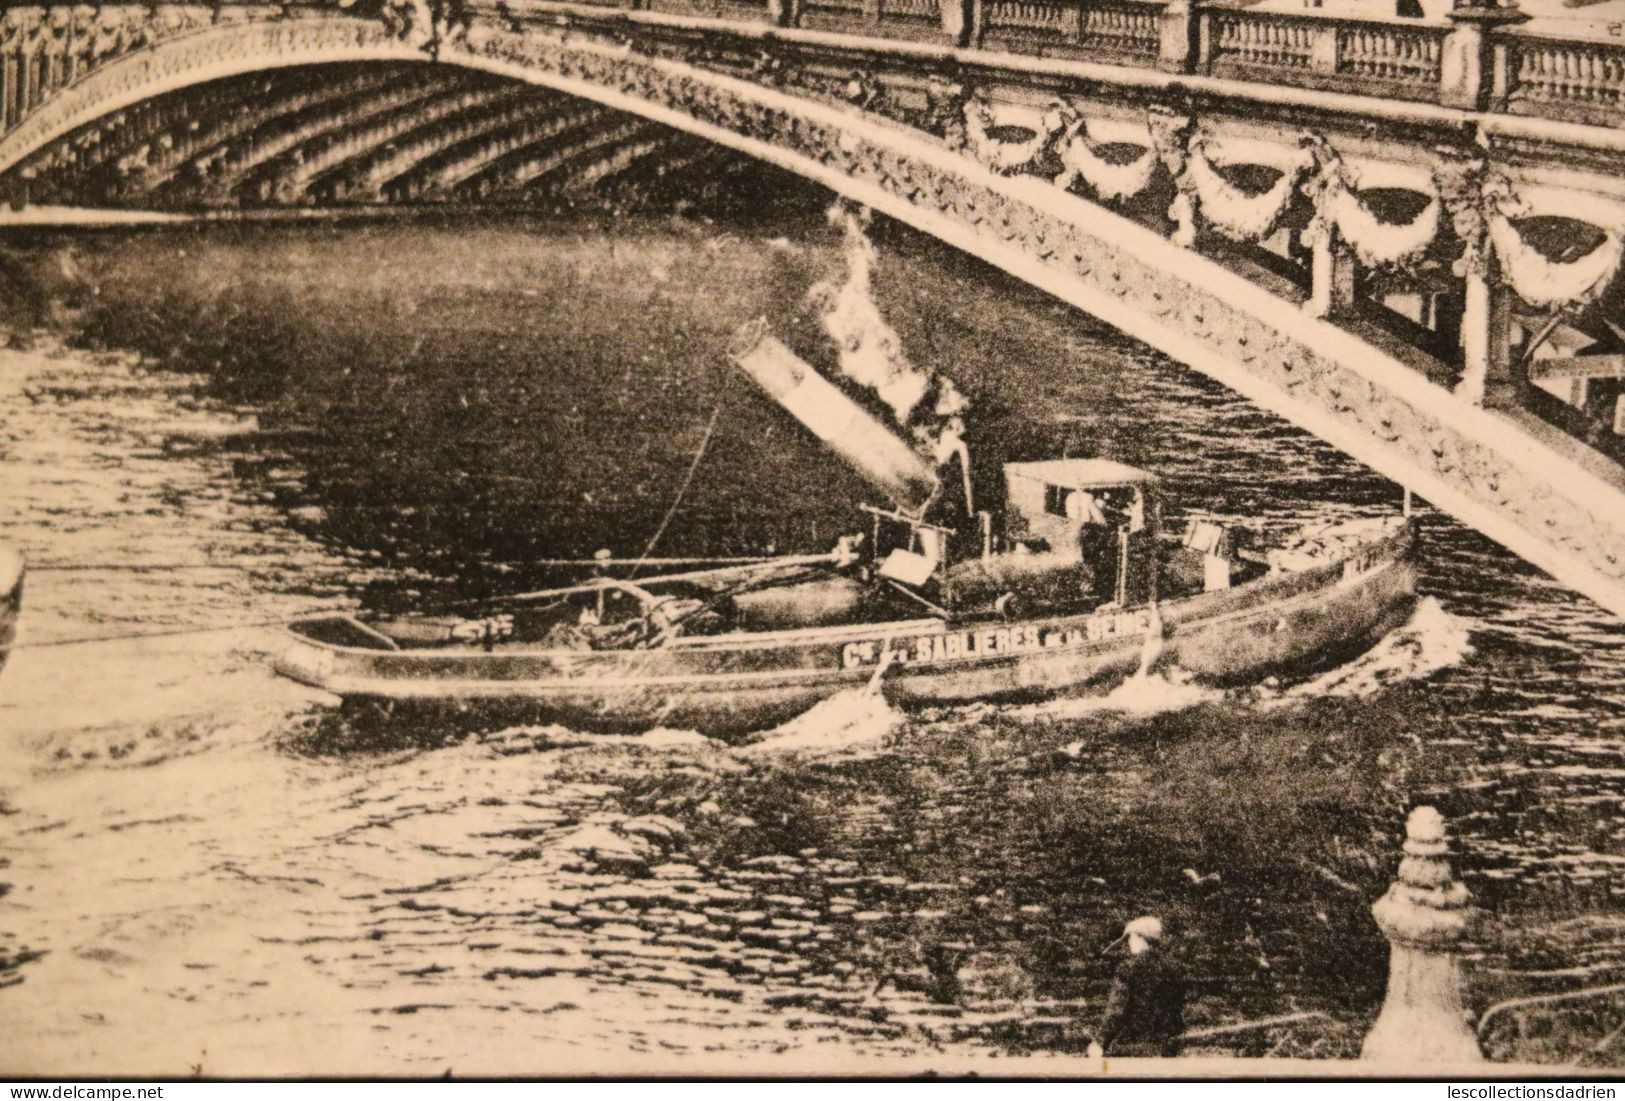 Carte postale ancienne - Paris - pont Alexandre III et Petit Palais - bareau avec cheminée qui se baisse